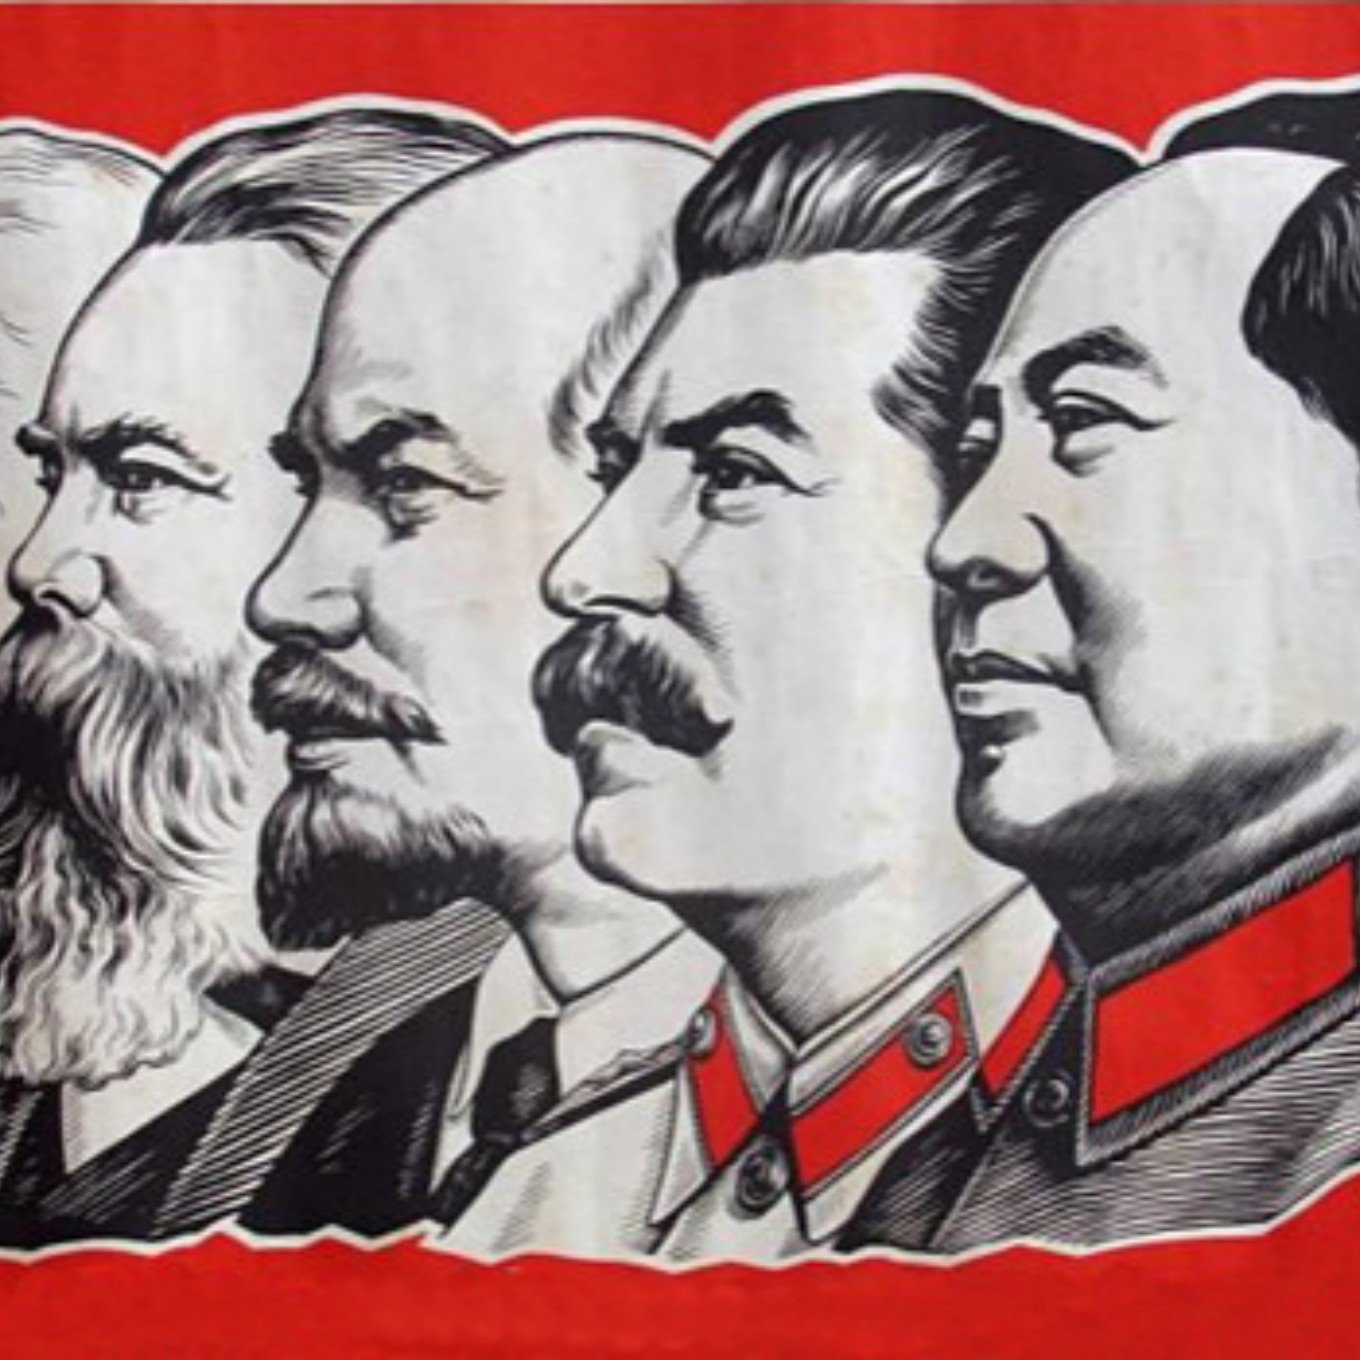 Communist regimes